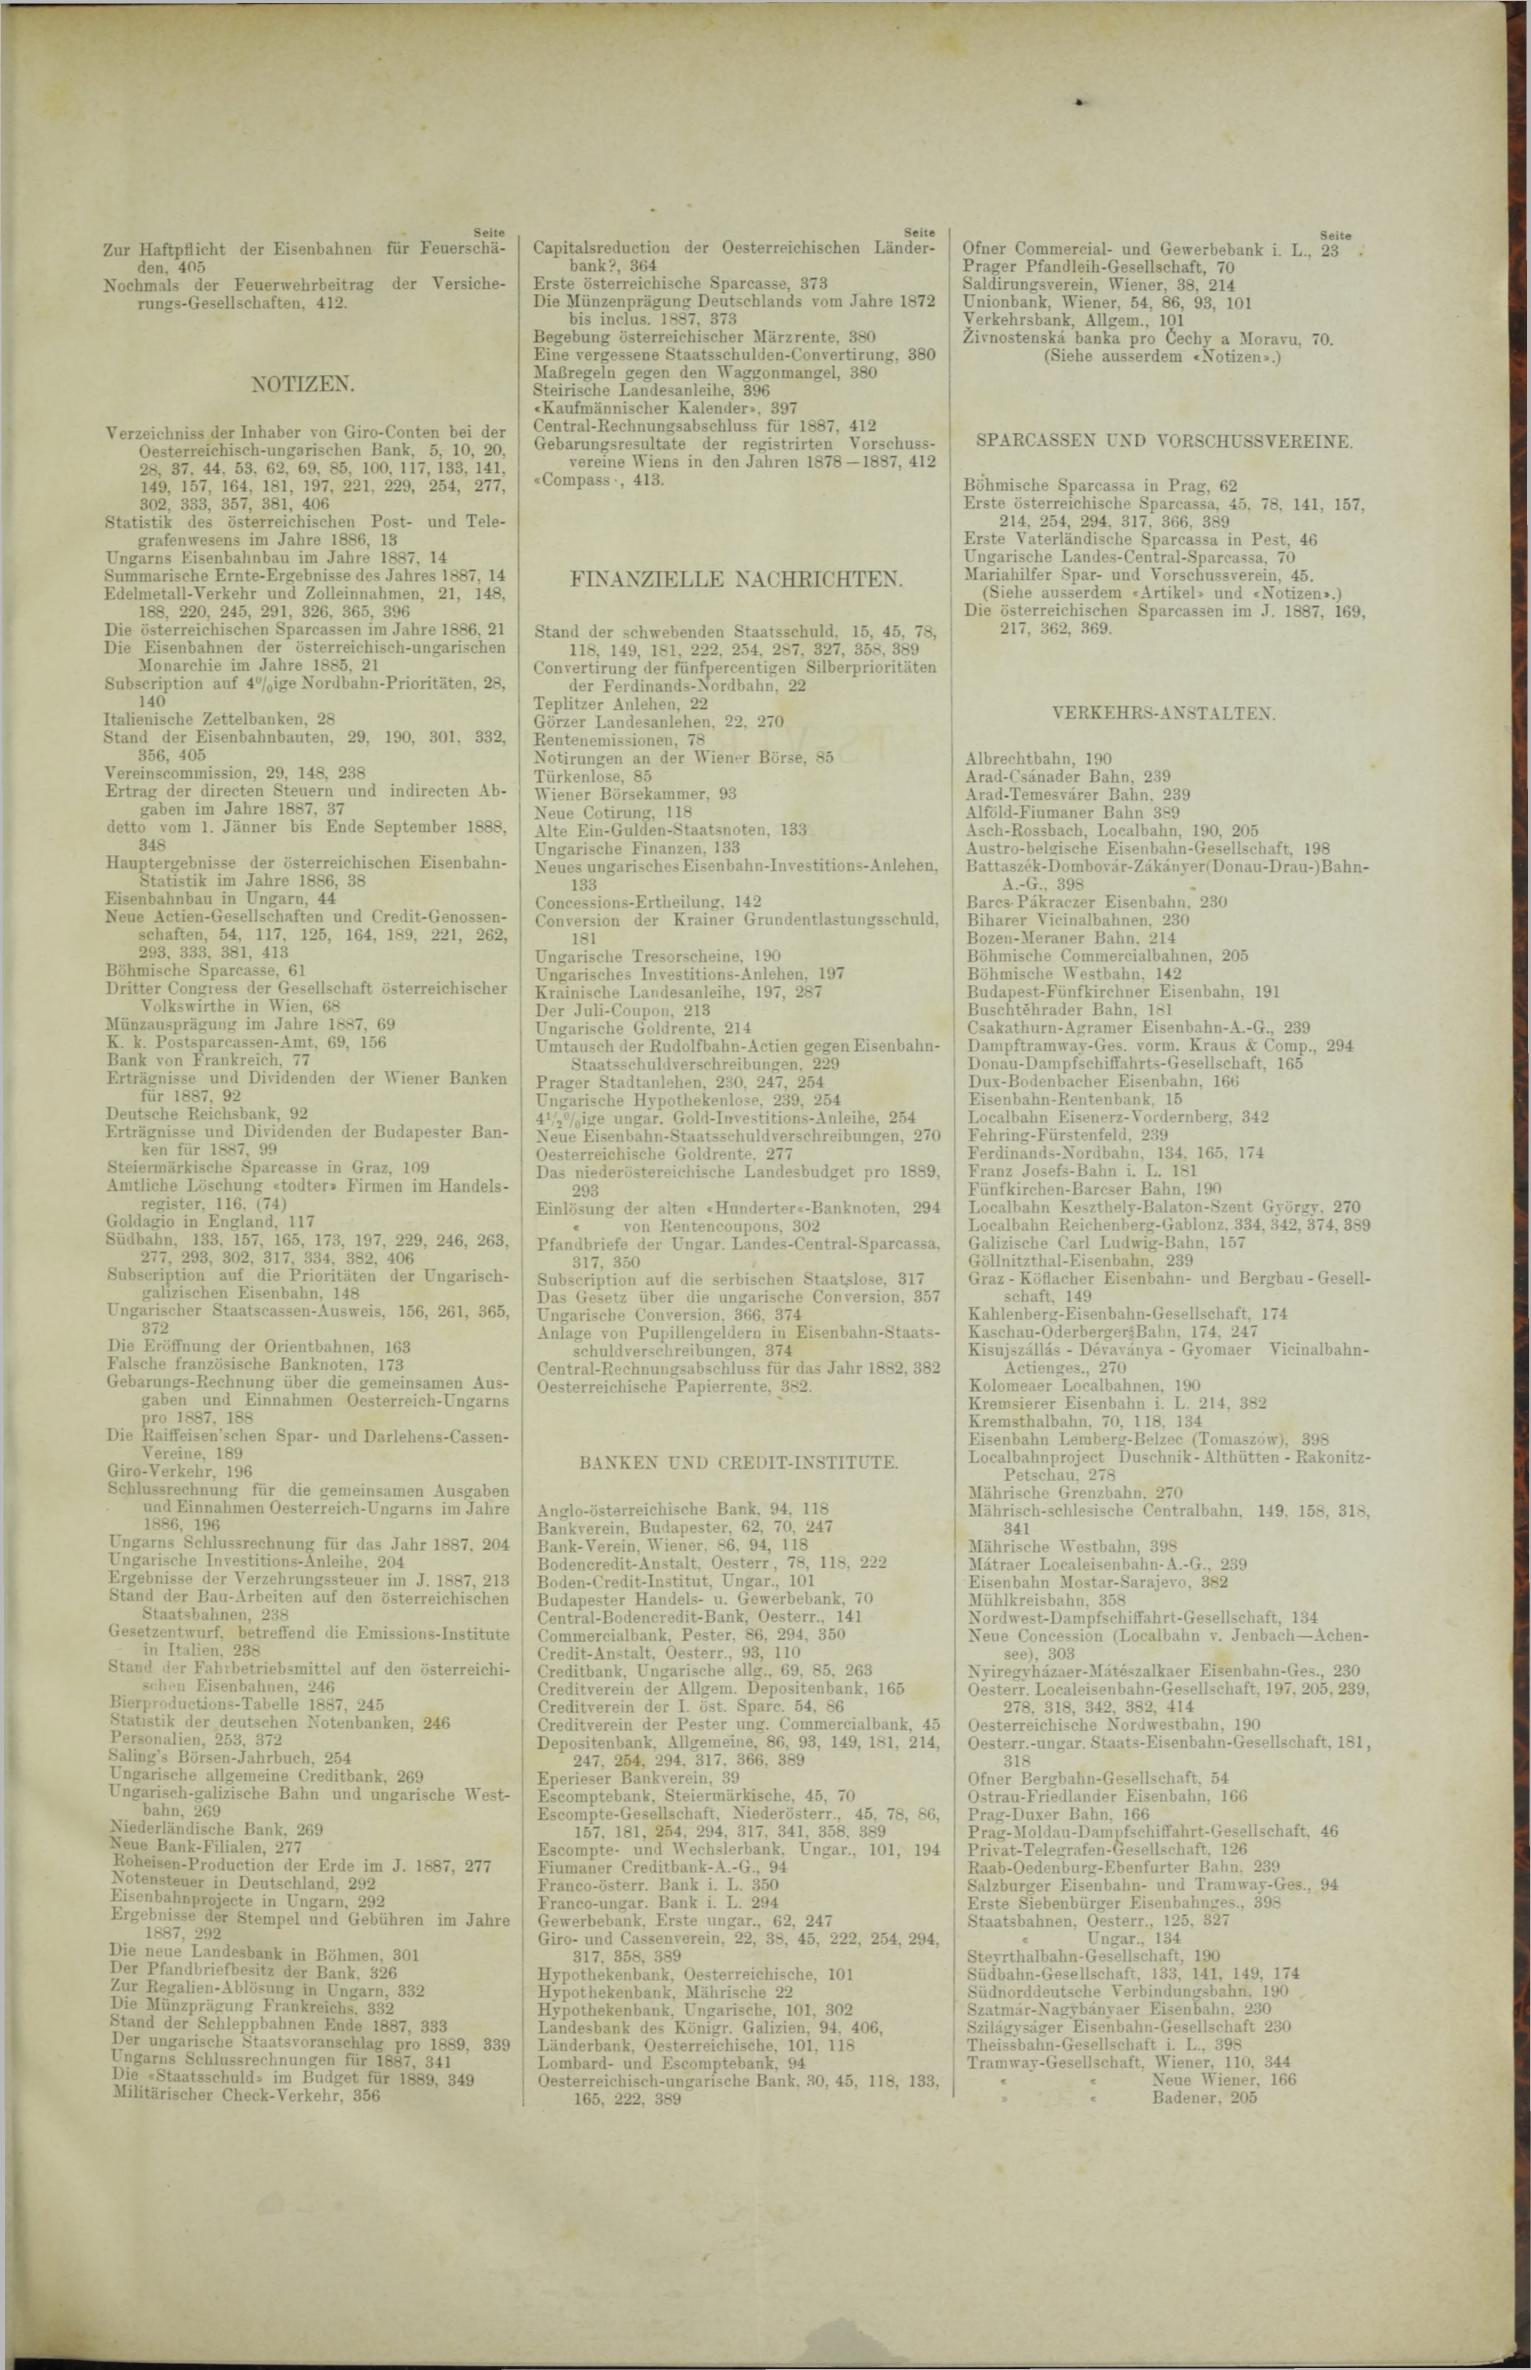 Der Tresor 23.08.1888 - Seite 11